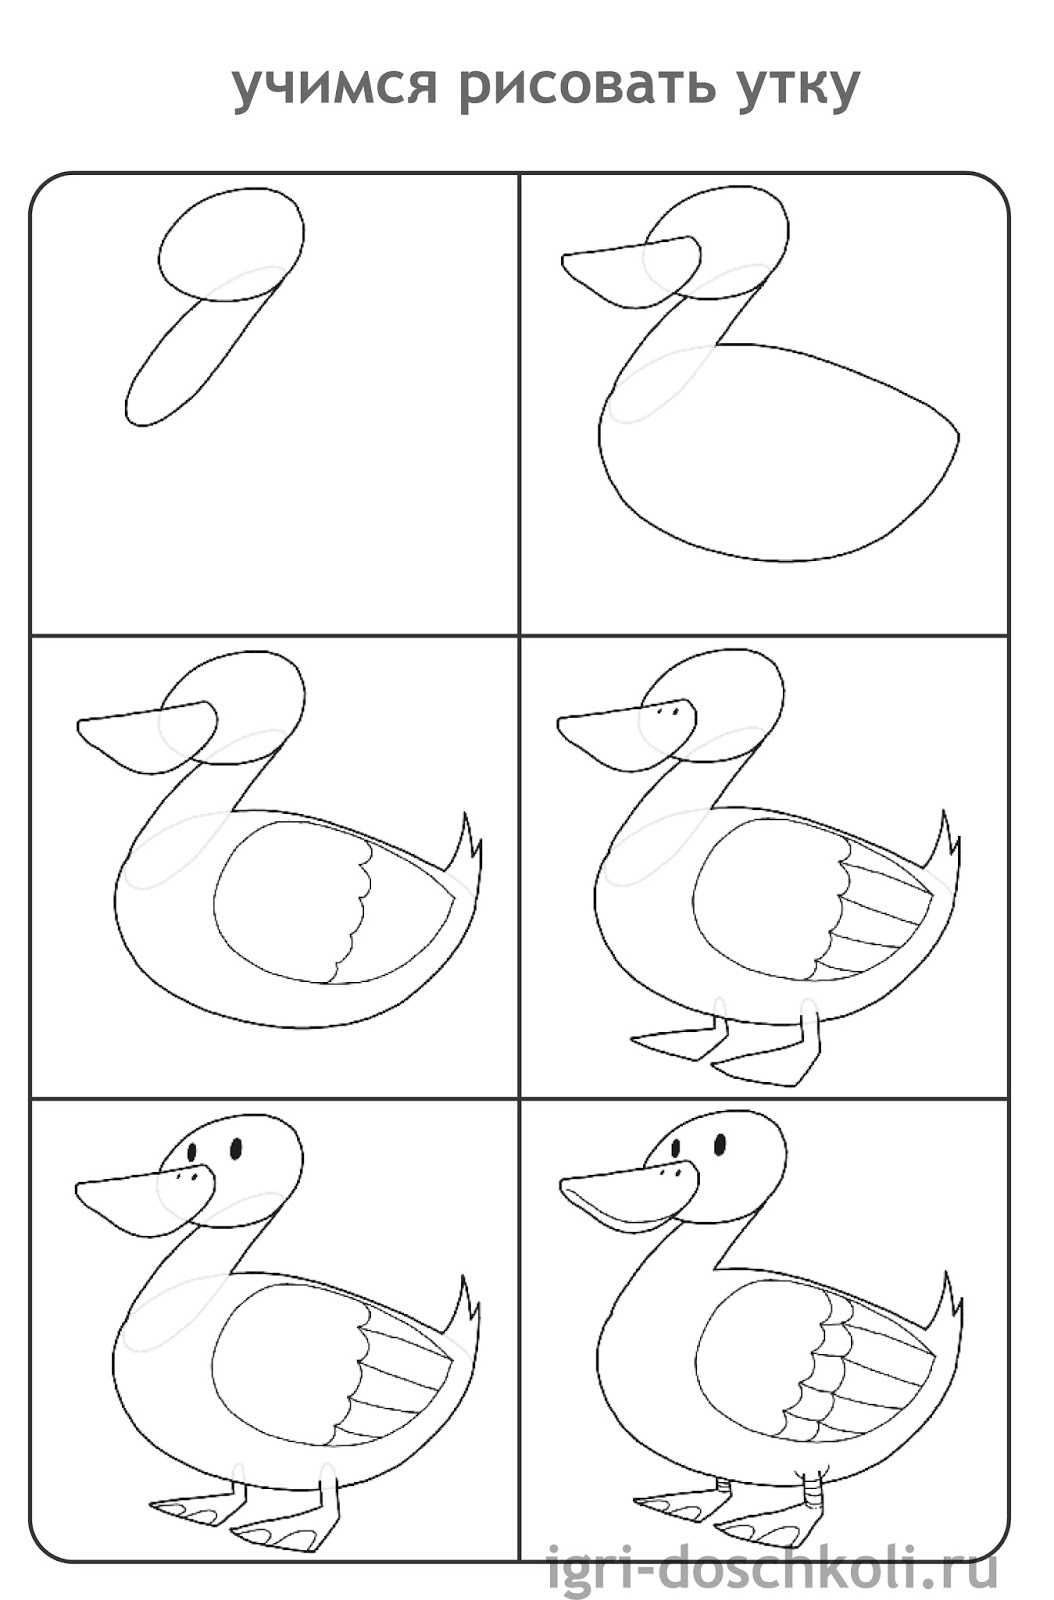 Как нарисовать утку своими руками пошагово: урок рисования утки красками и карандашом (инструкции, схемы, картинки)